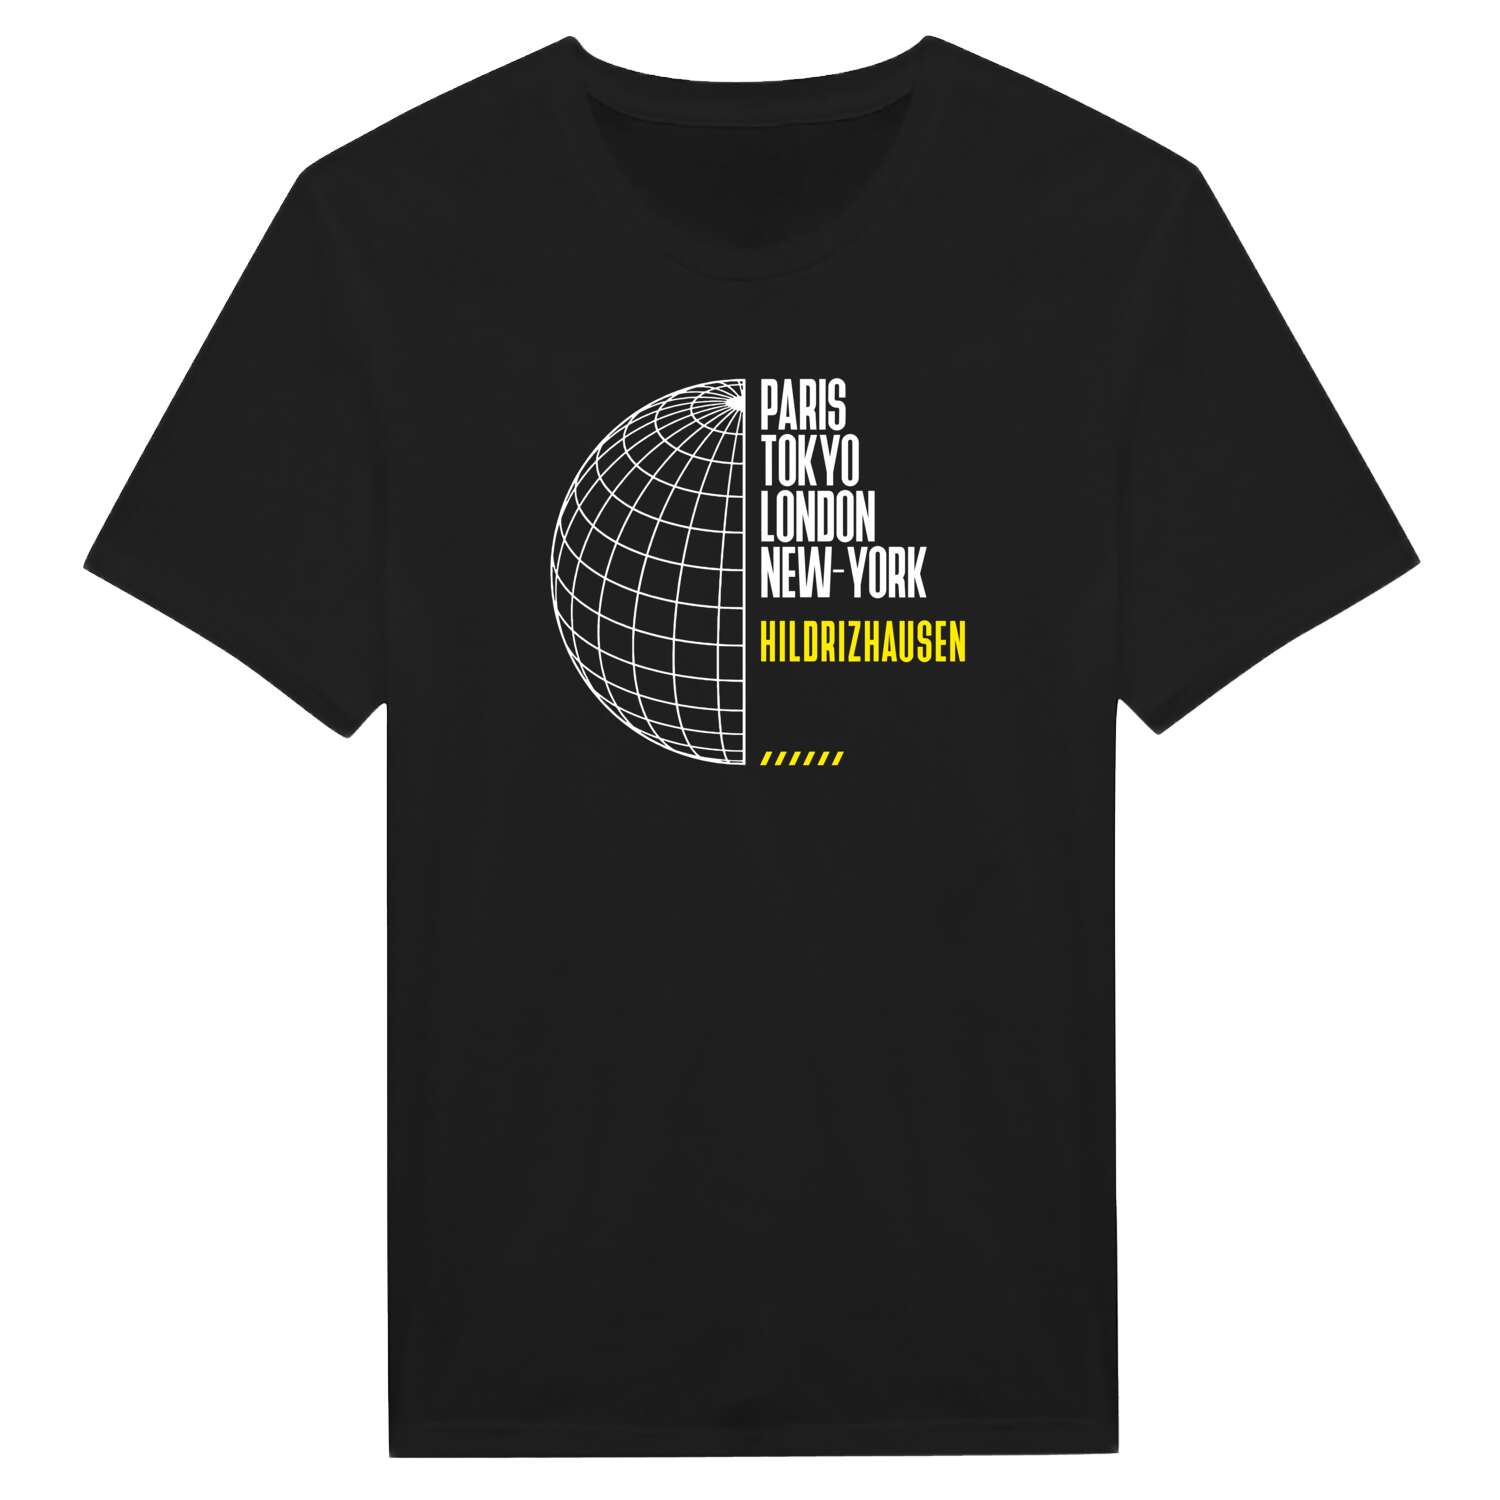 Hildrizhausen T-Shirt »Paris Tokyo London«